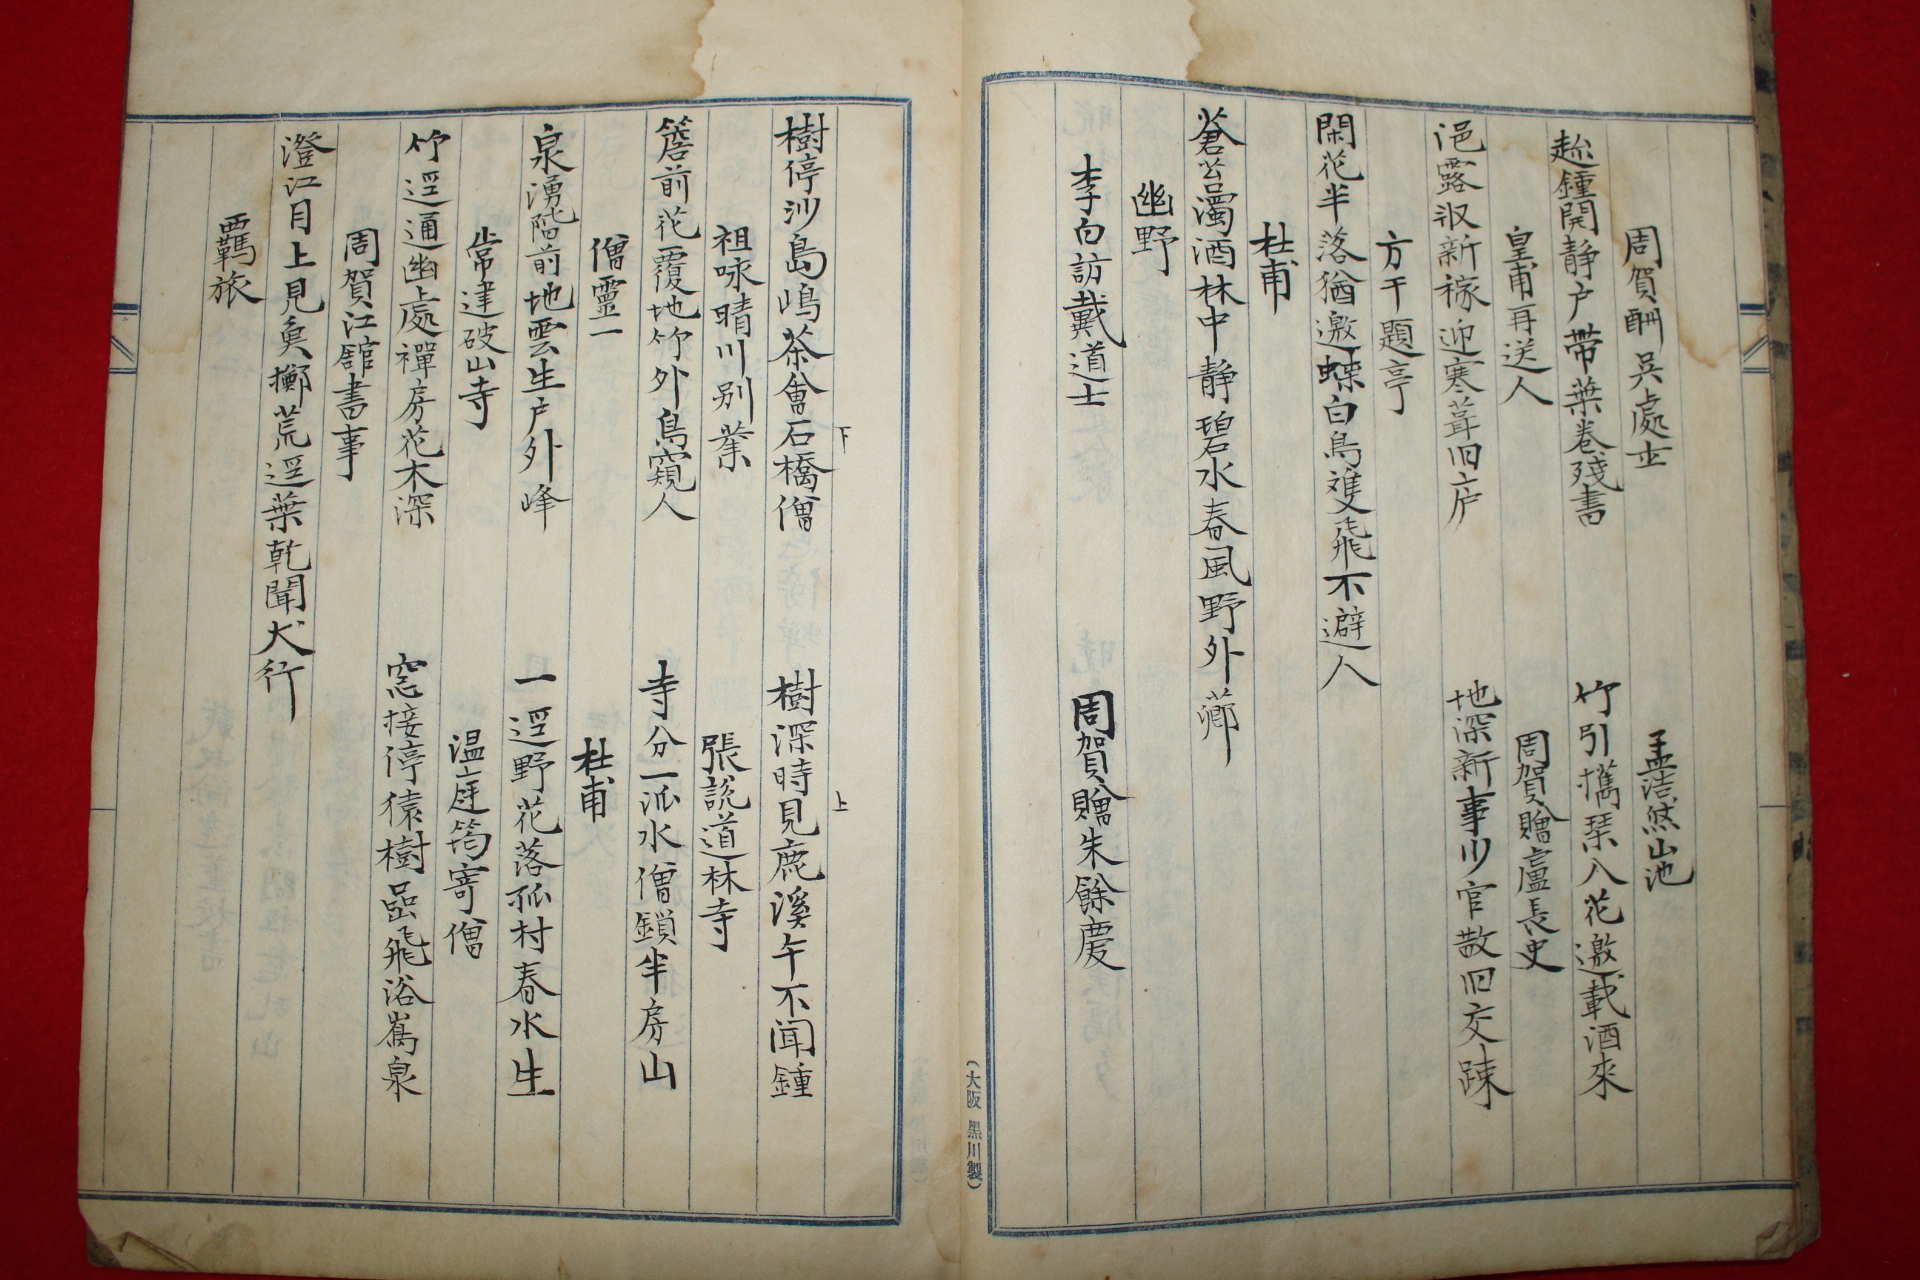 조선시대 시인의 약력과 시가 필사된 필사본 1책